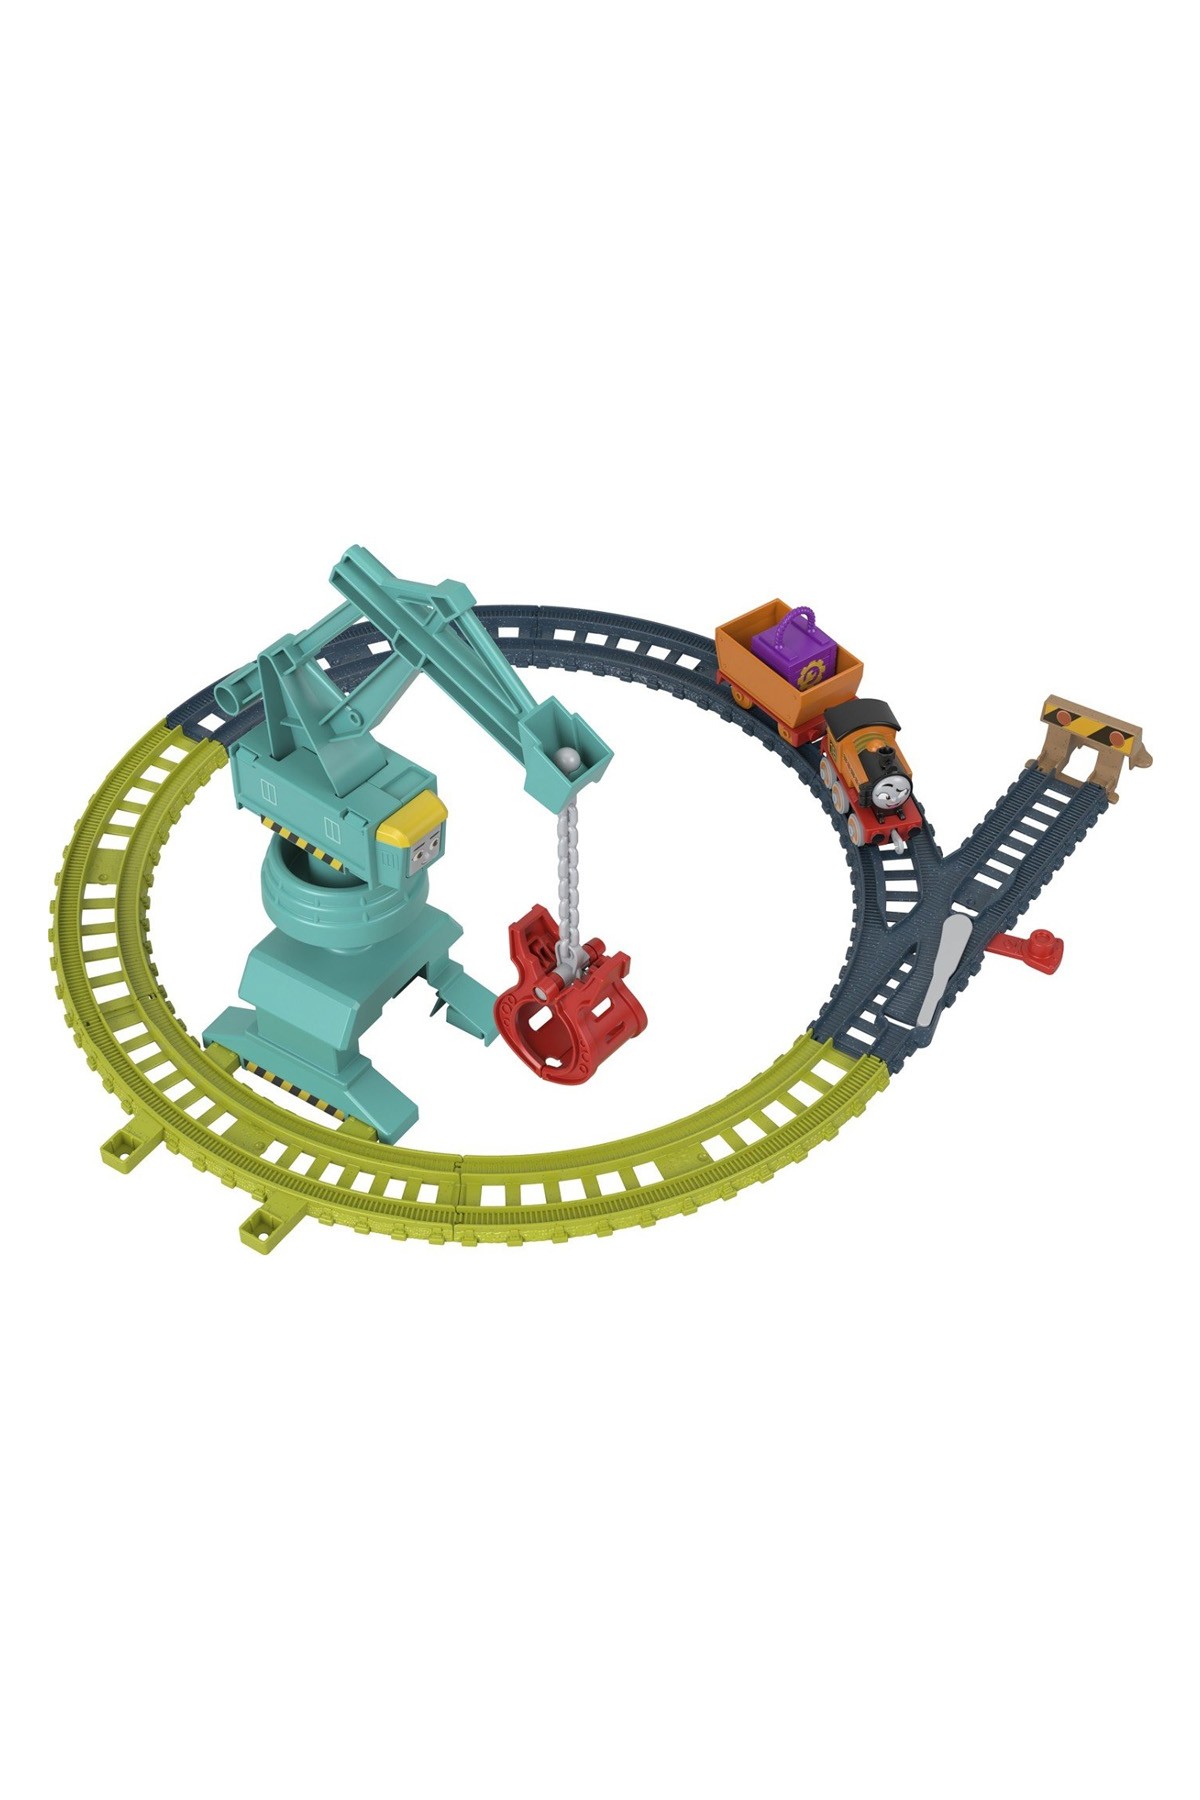 Thomas ve Arkadaşları - Tren Seti (Sür-Bırak)